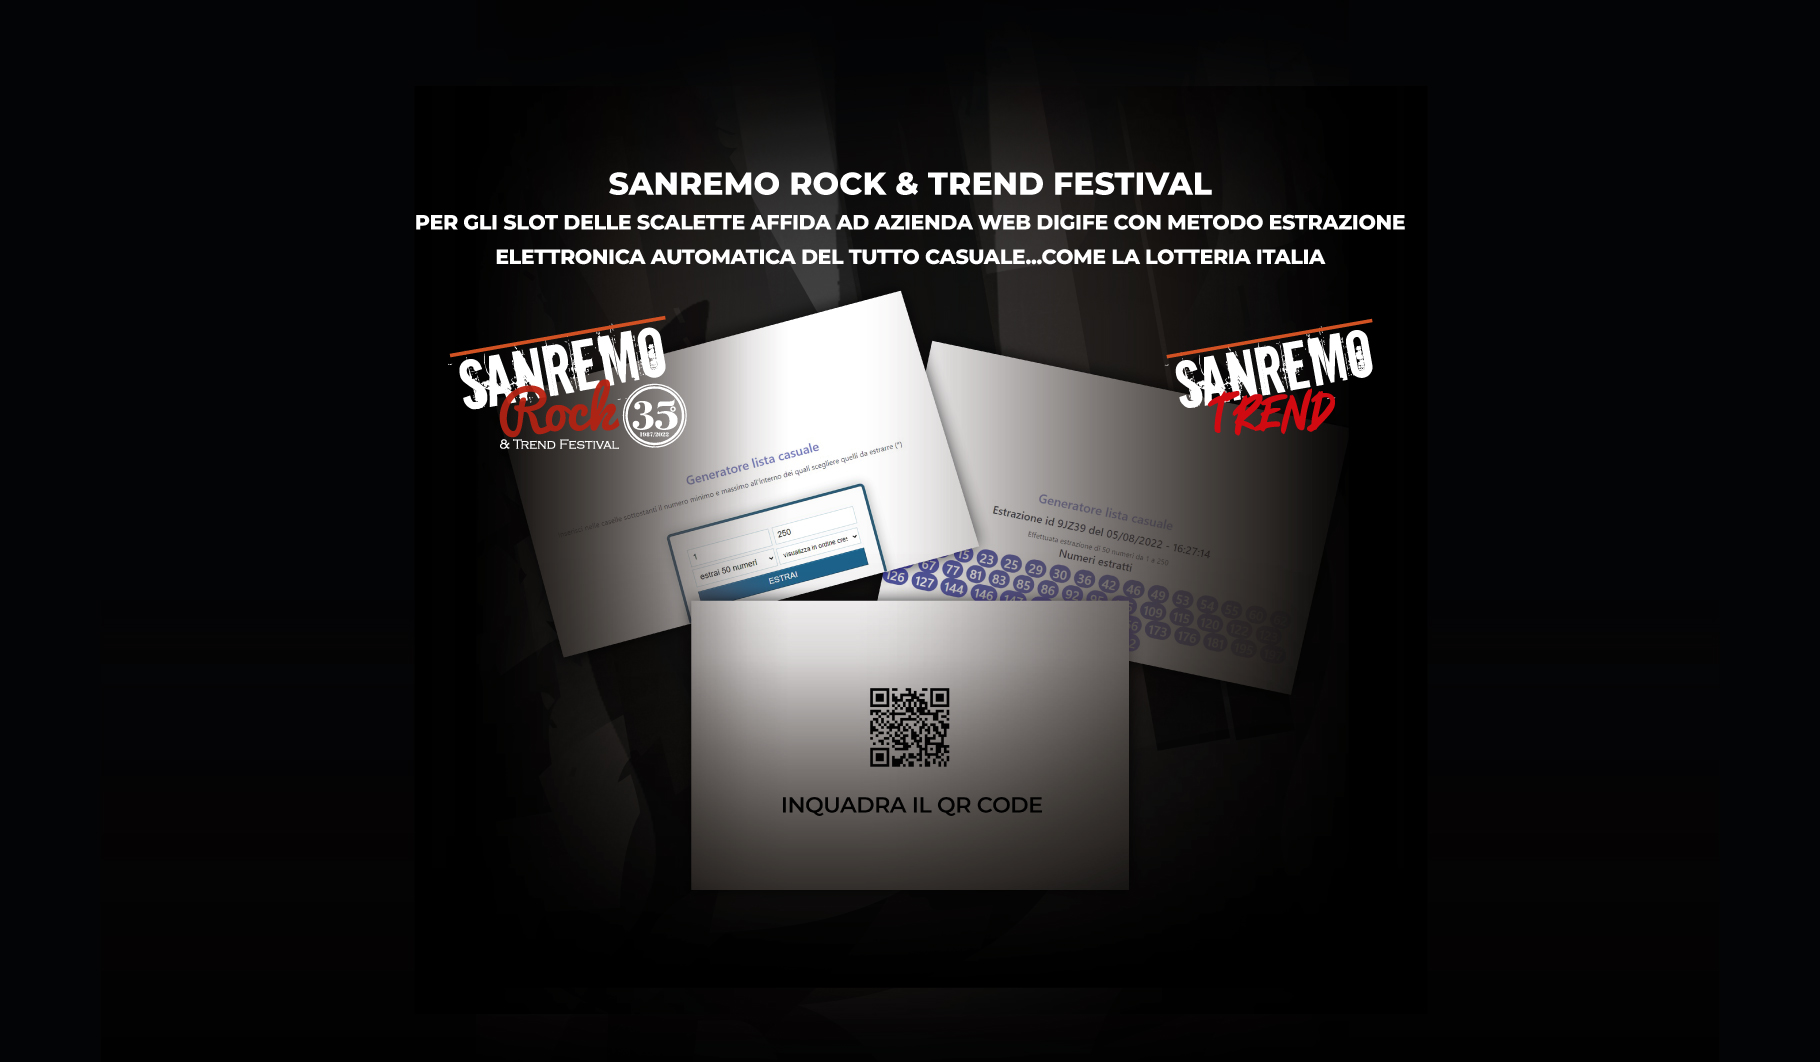 Sanremo Rock in Arrivo le scalette elettroniche con gli Slot!